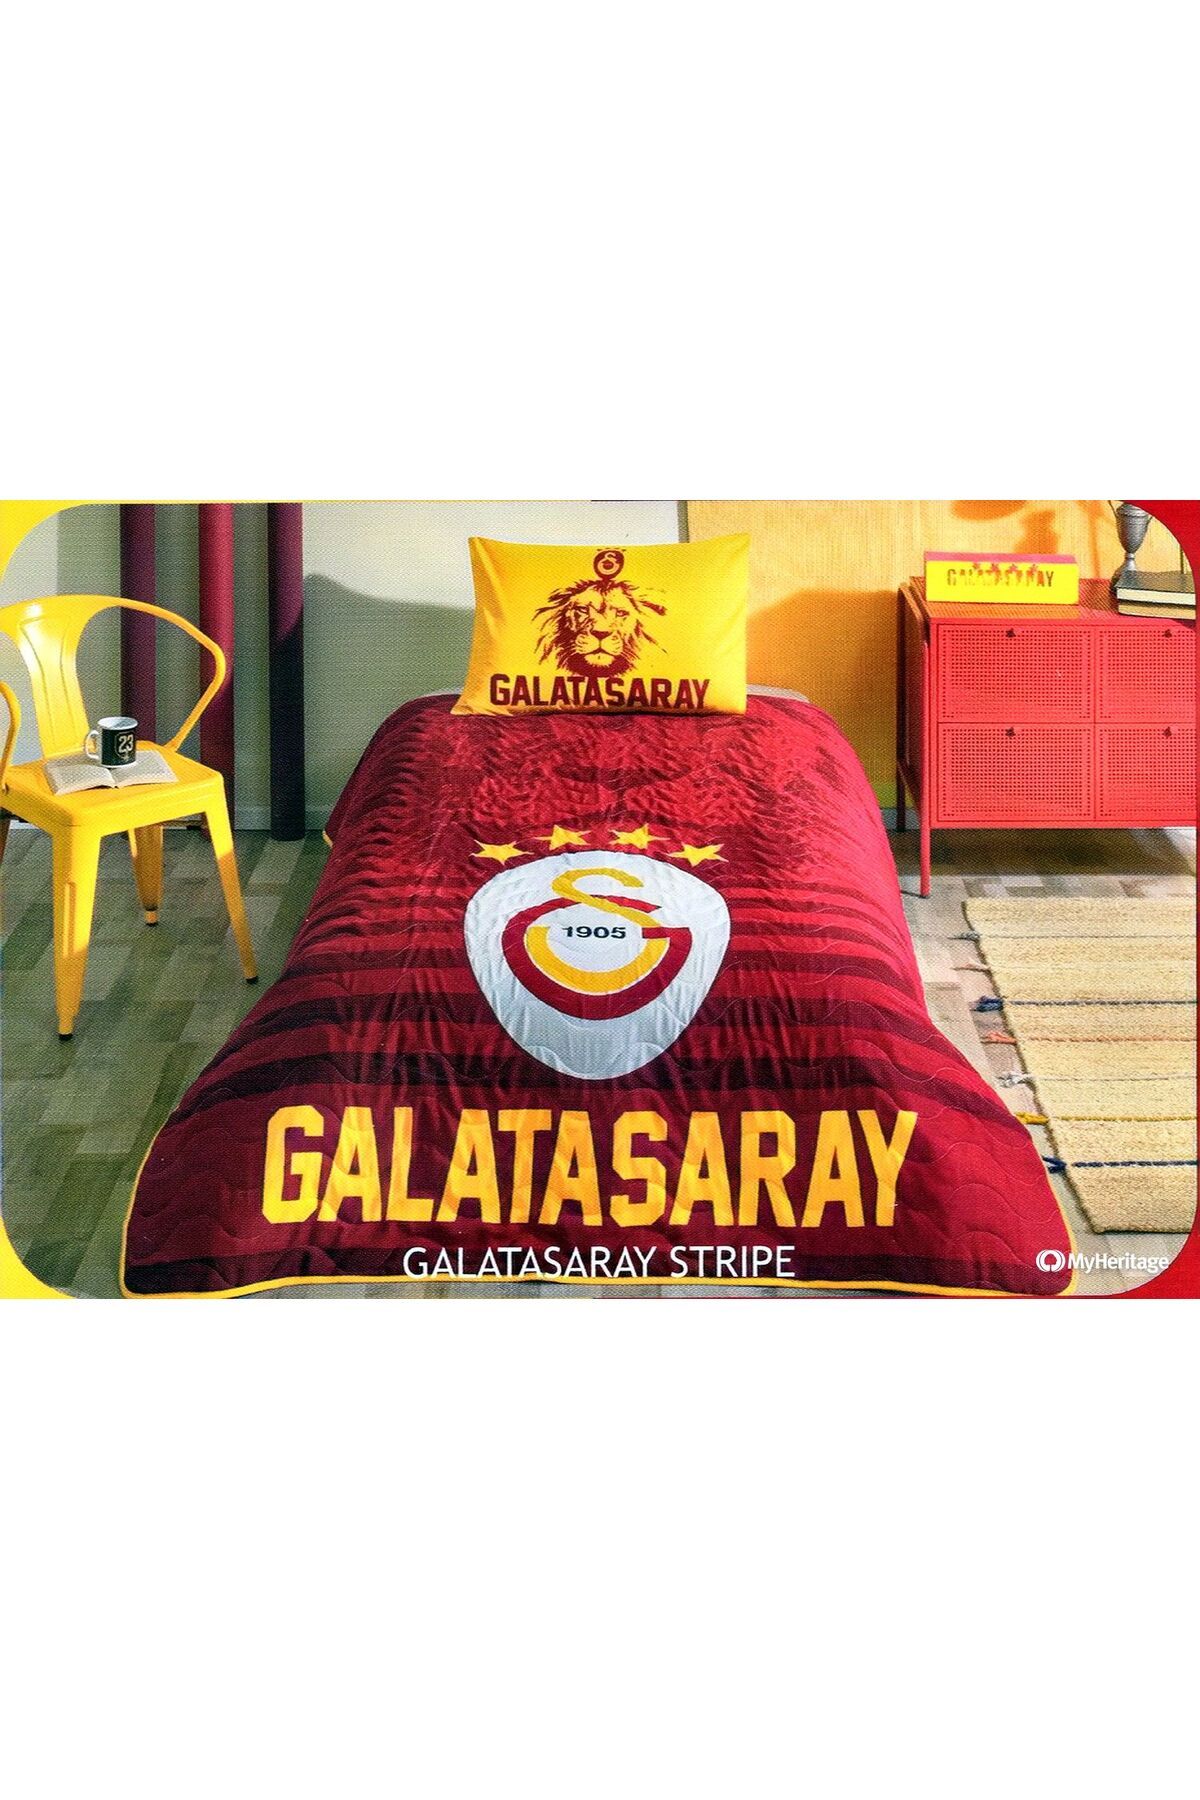 Taç Galatasaray Stripe Tek kişilik Yatak Örtüsü 160x 230 cm